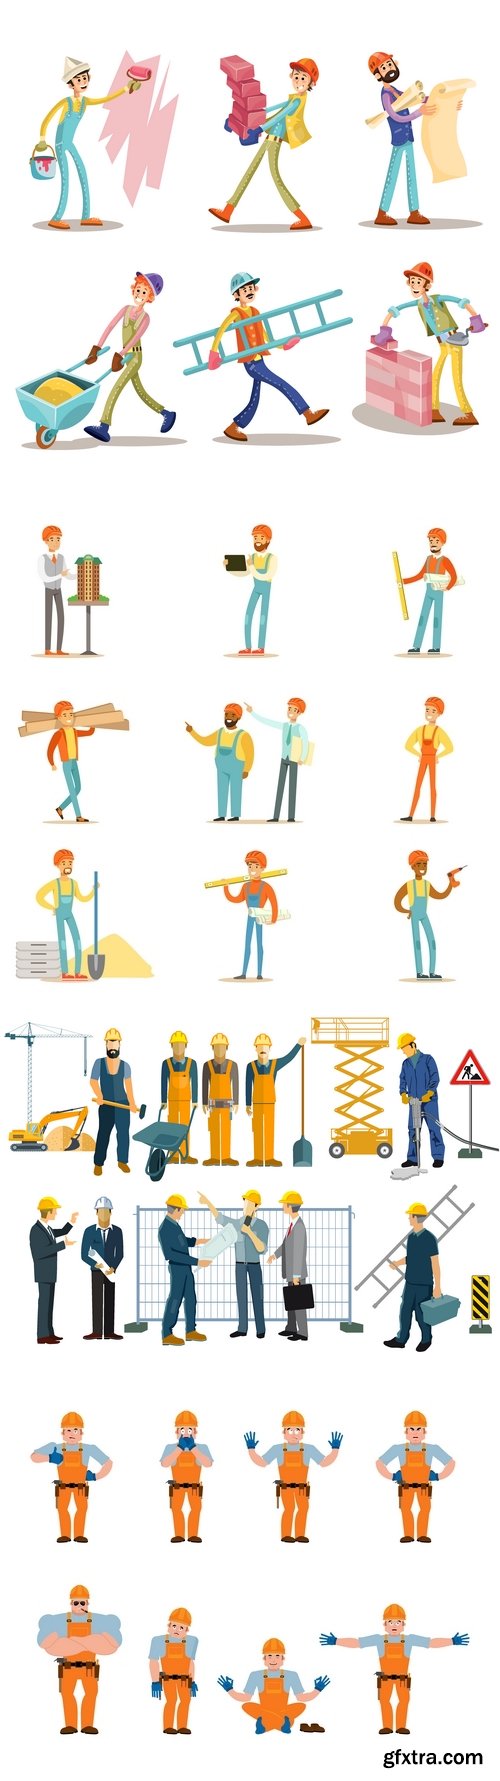 Vectors - Construction Workers 15